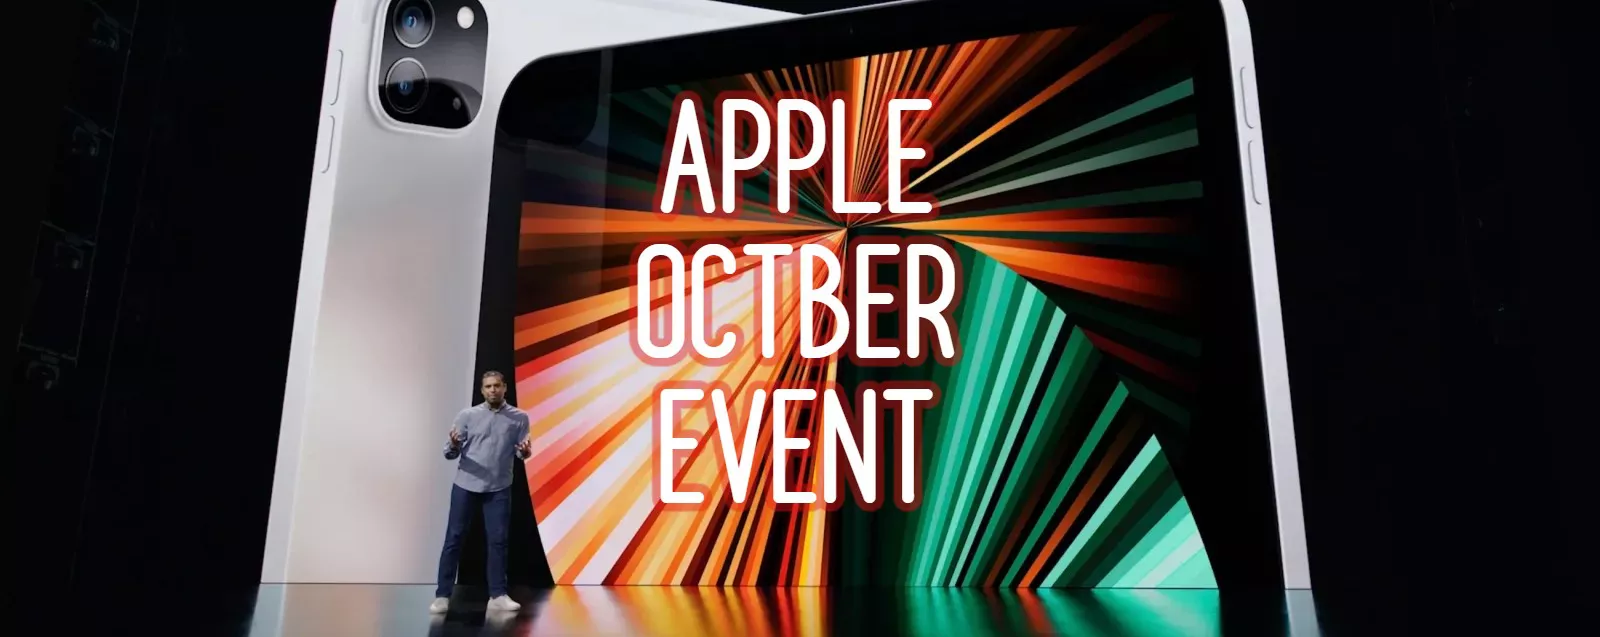 Tutti in fibrillazione per l'EVENTO Apple di OTTOBRE: cosa dobbiamo aspettarci